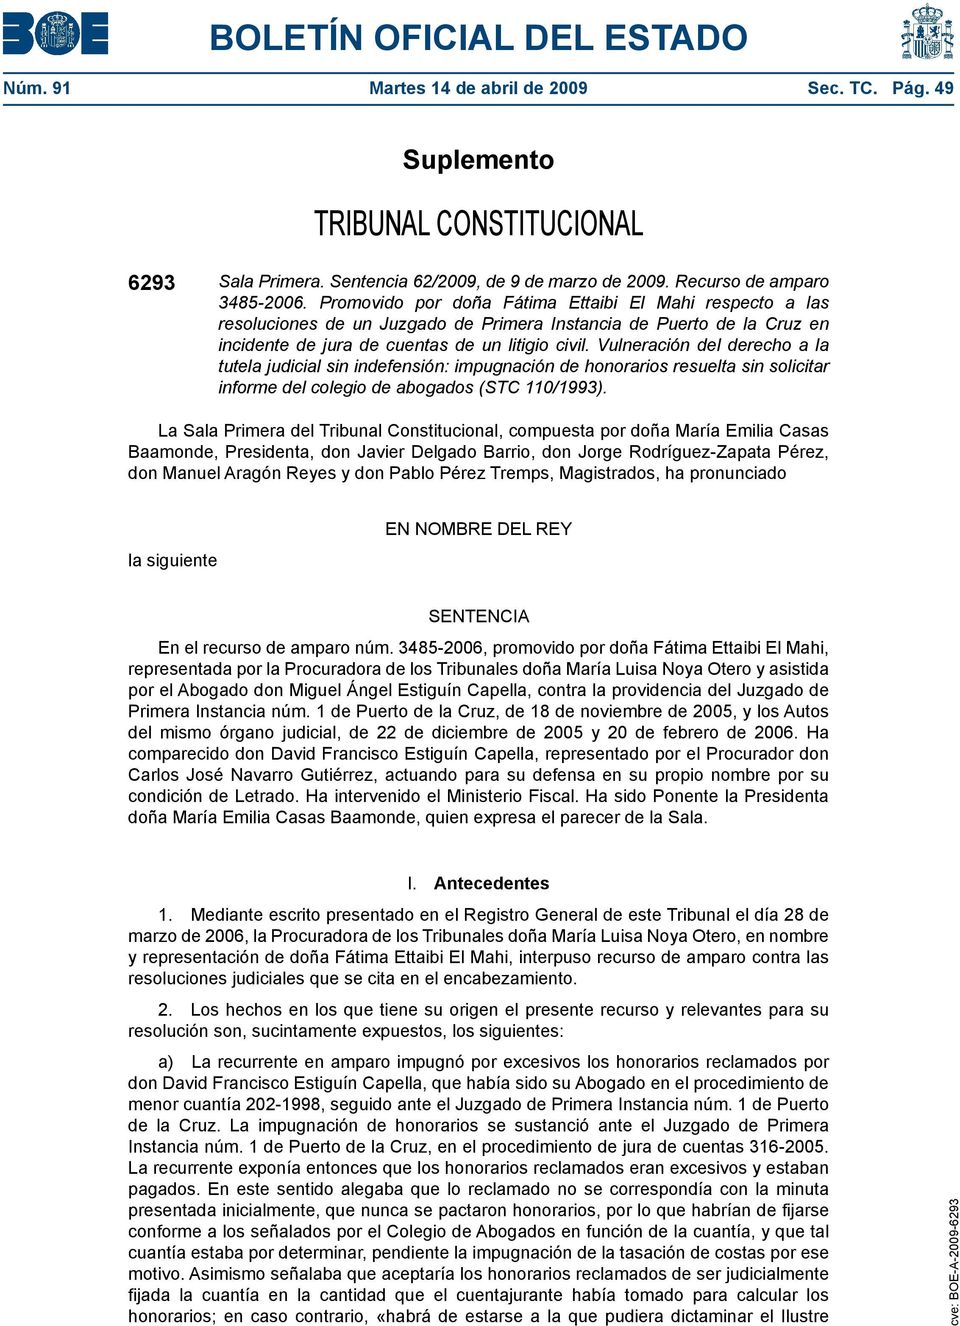 Vulneración del derecho a la tutela judicial sin indefensión: impugnación de honorarios resuelta sin solicitar informe del colegio de abogados (STC 110/1993).